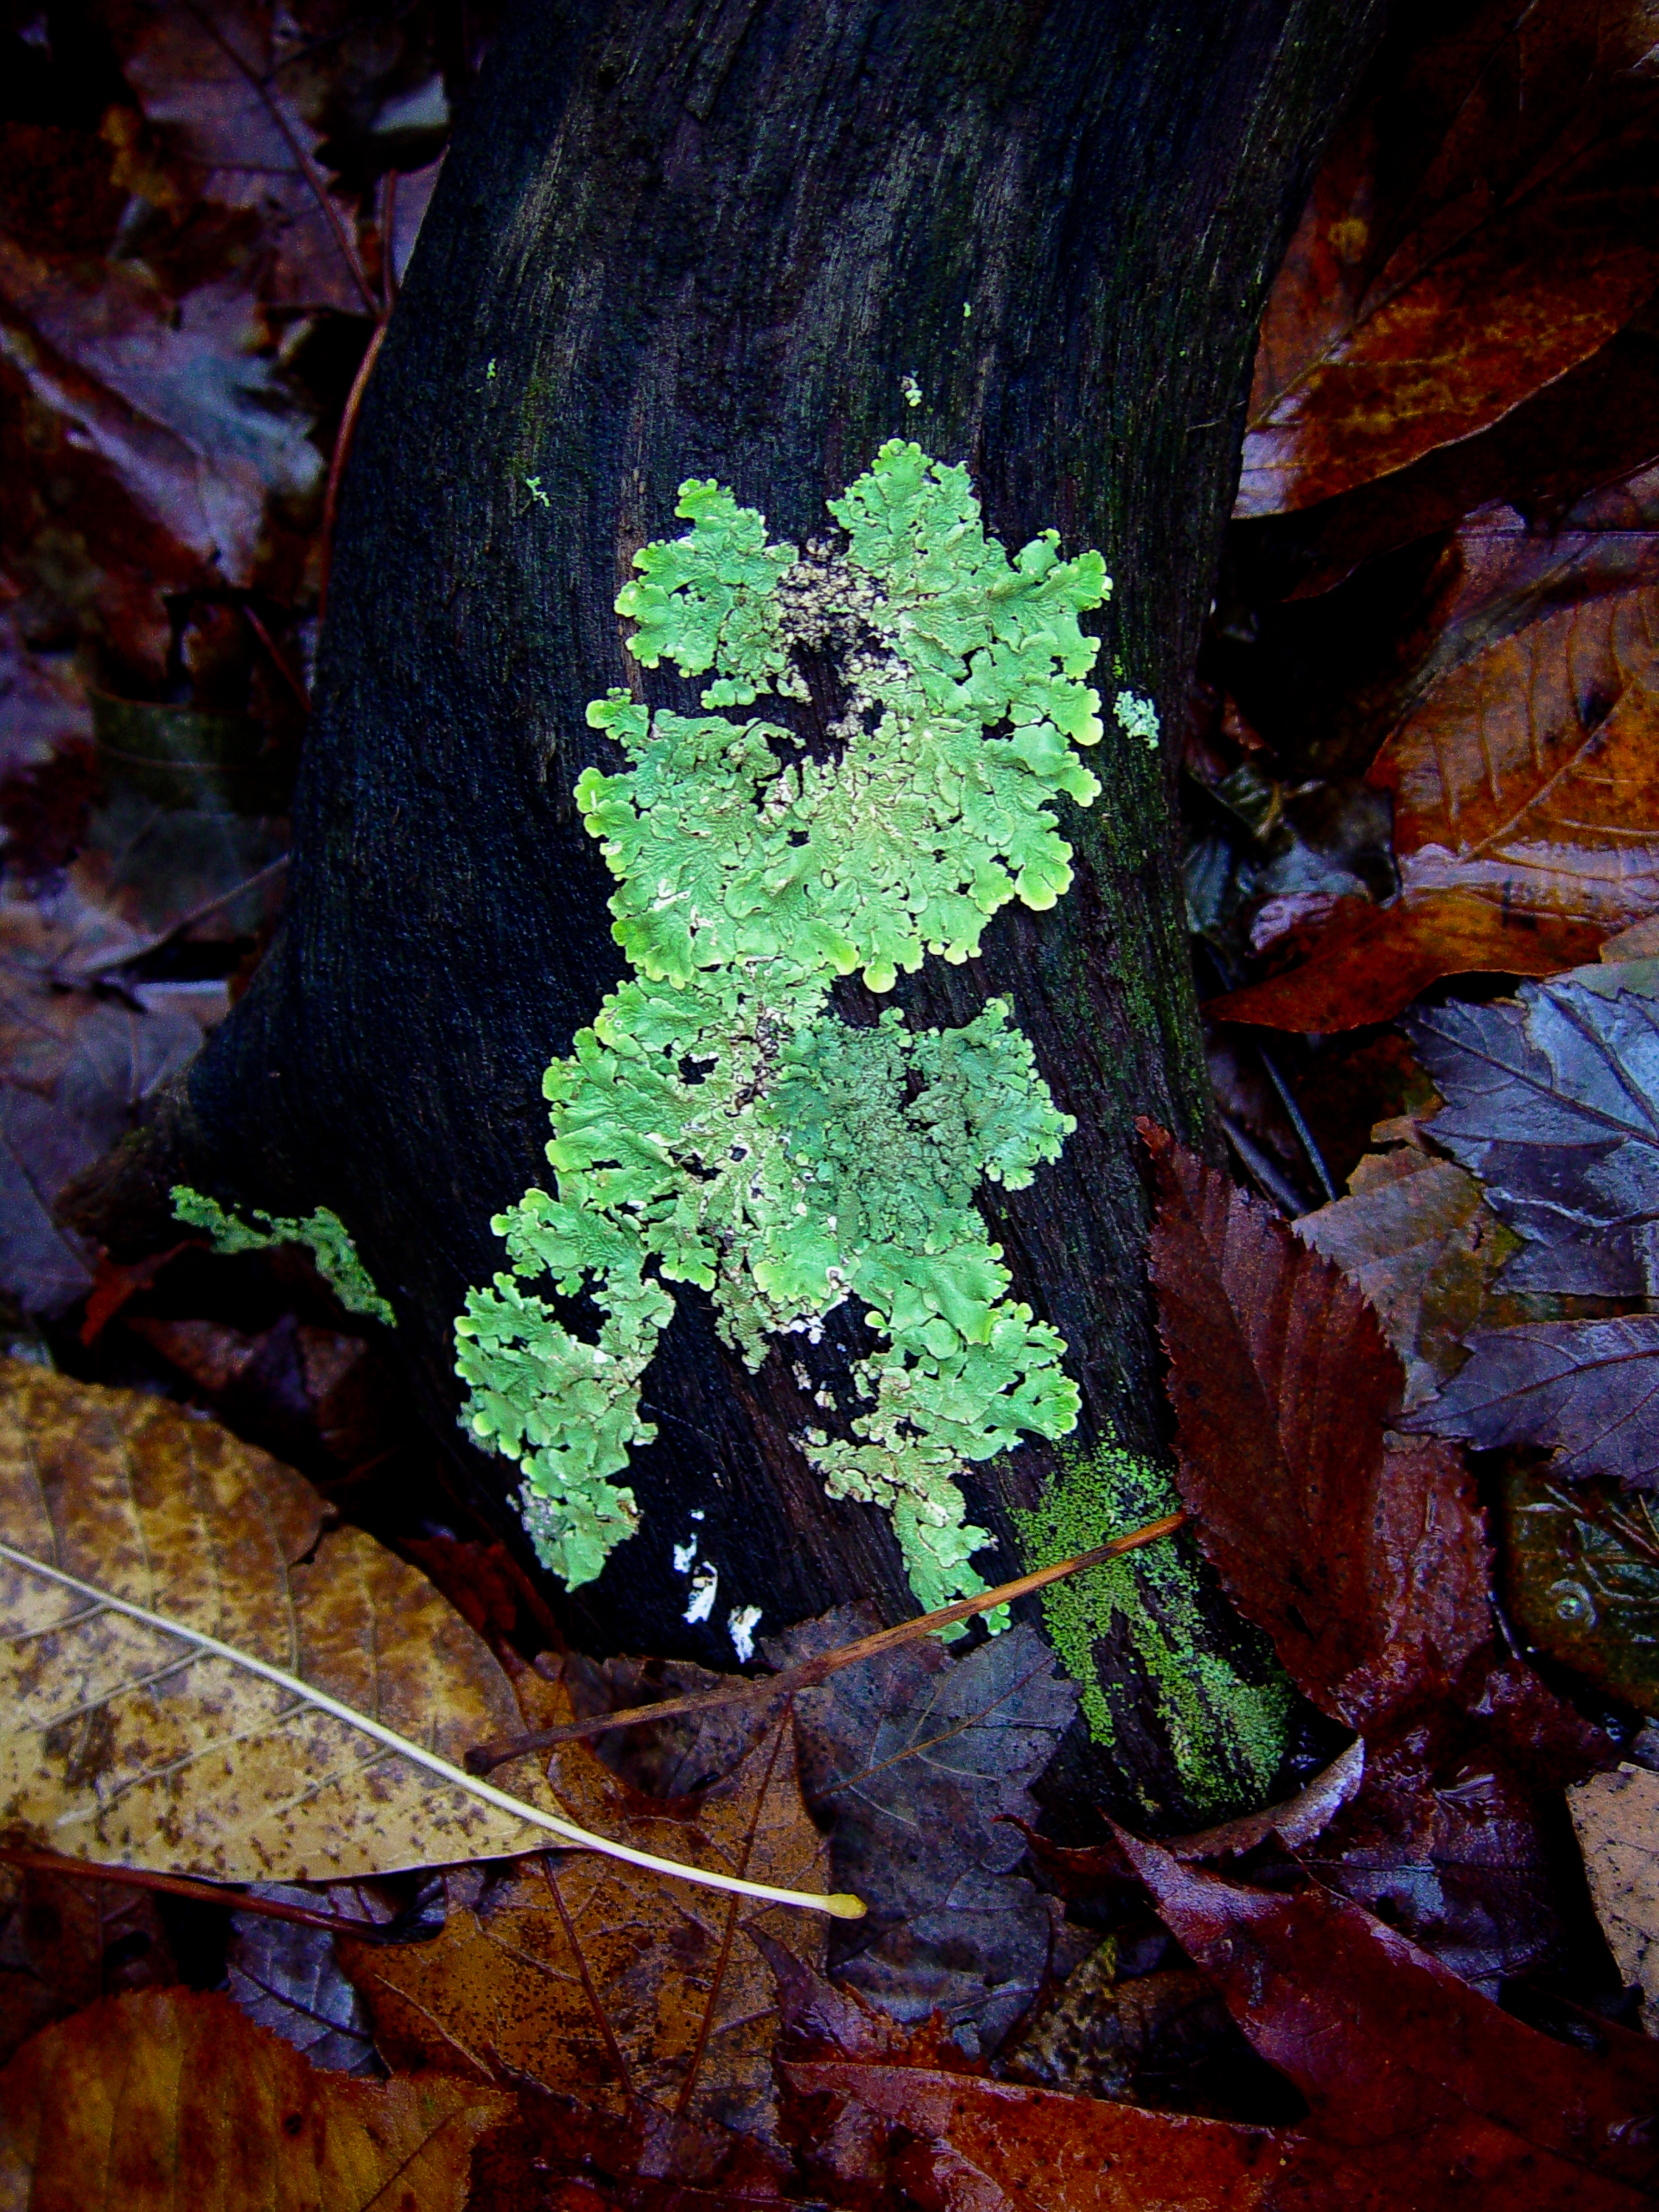 Lichen on tree trunk, western Virginia (2004)